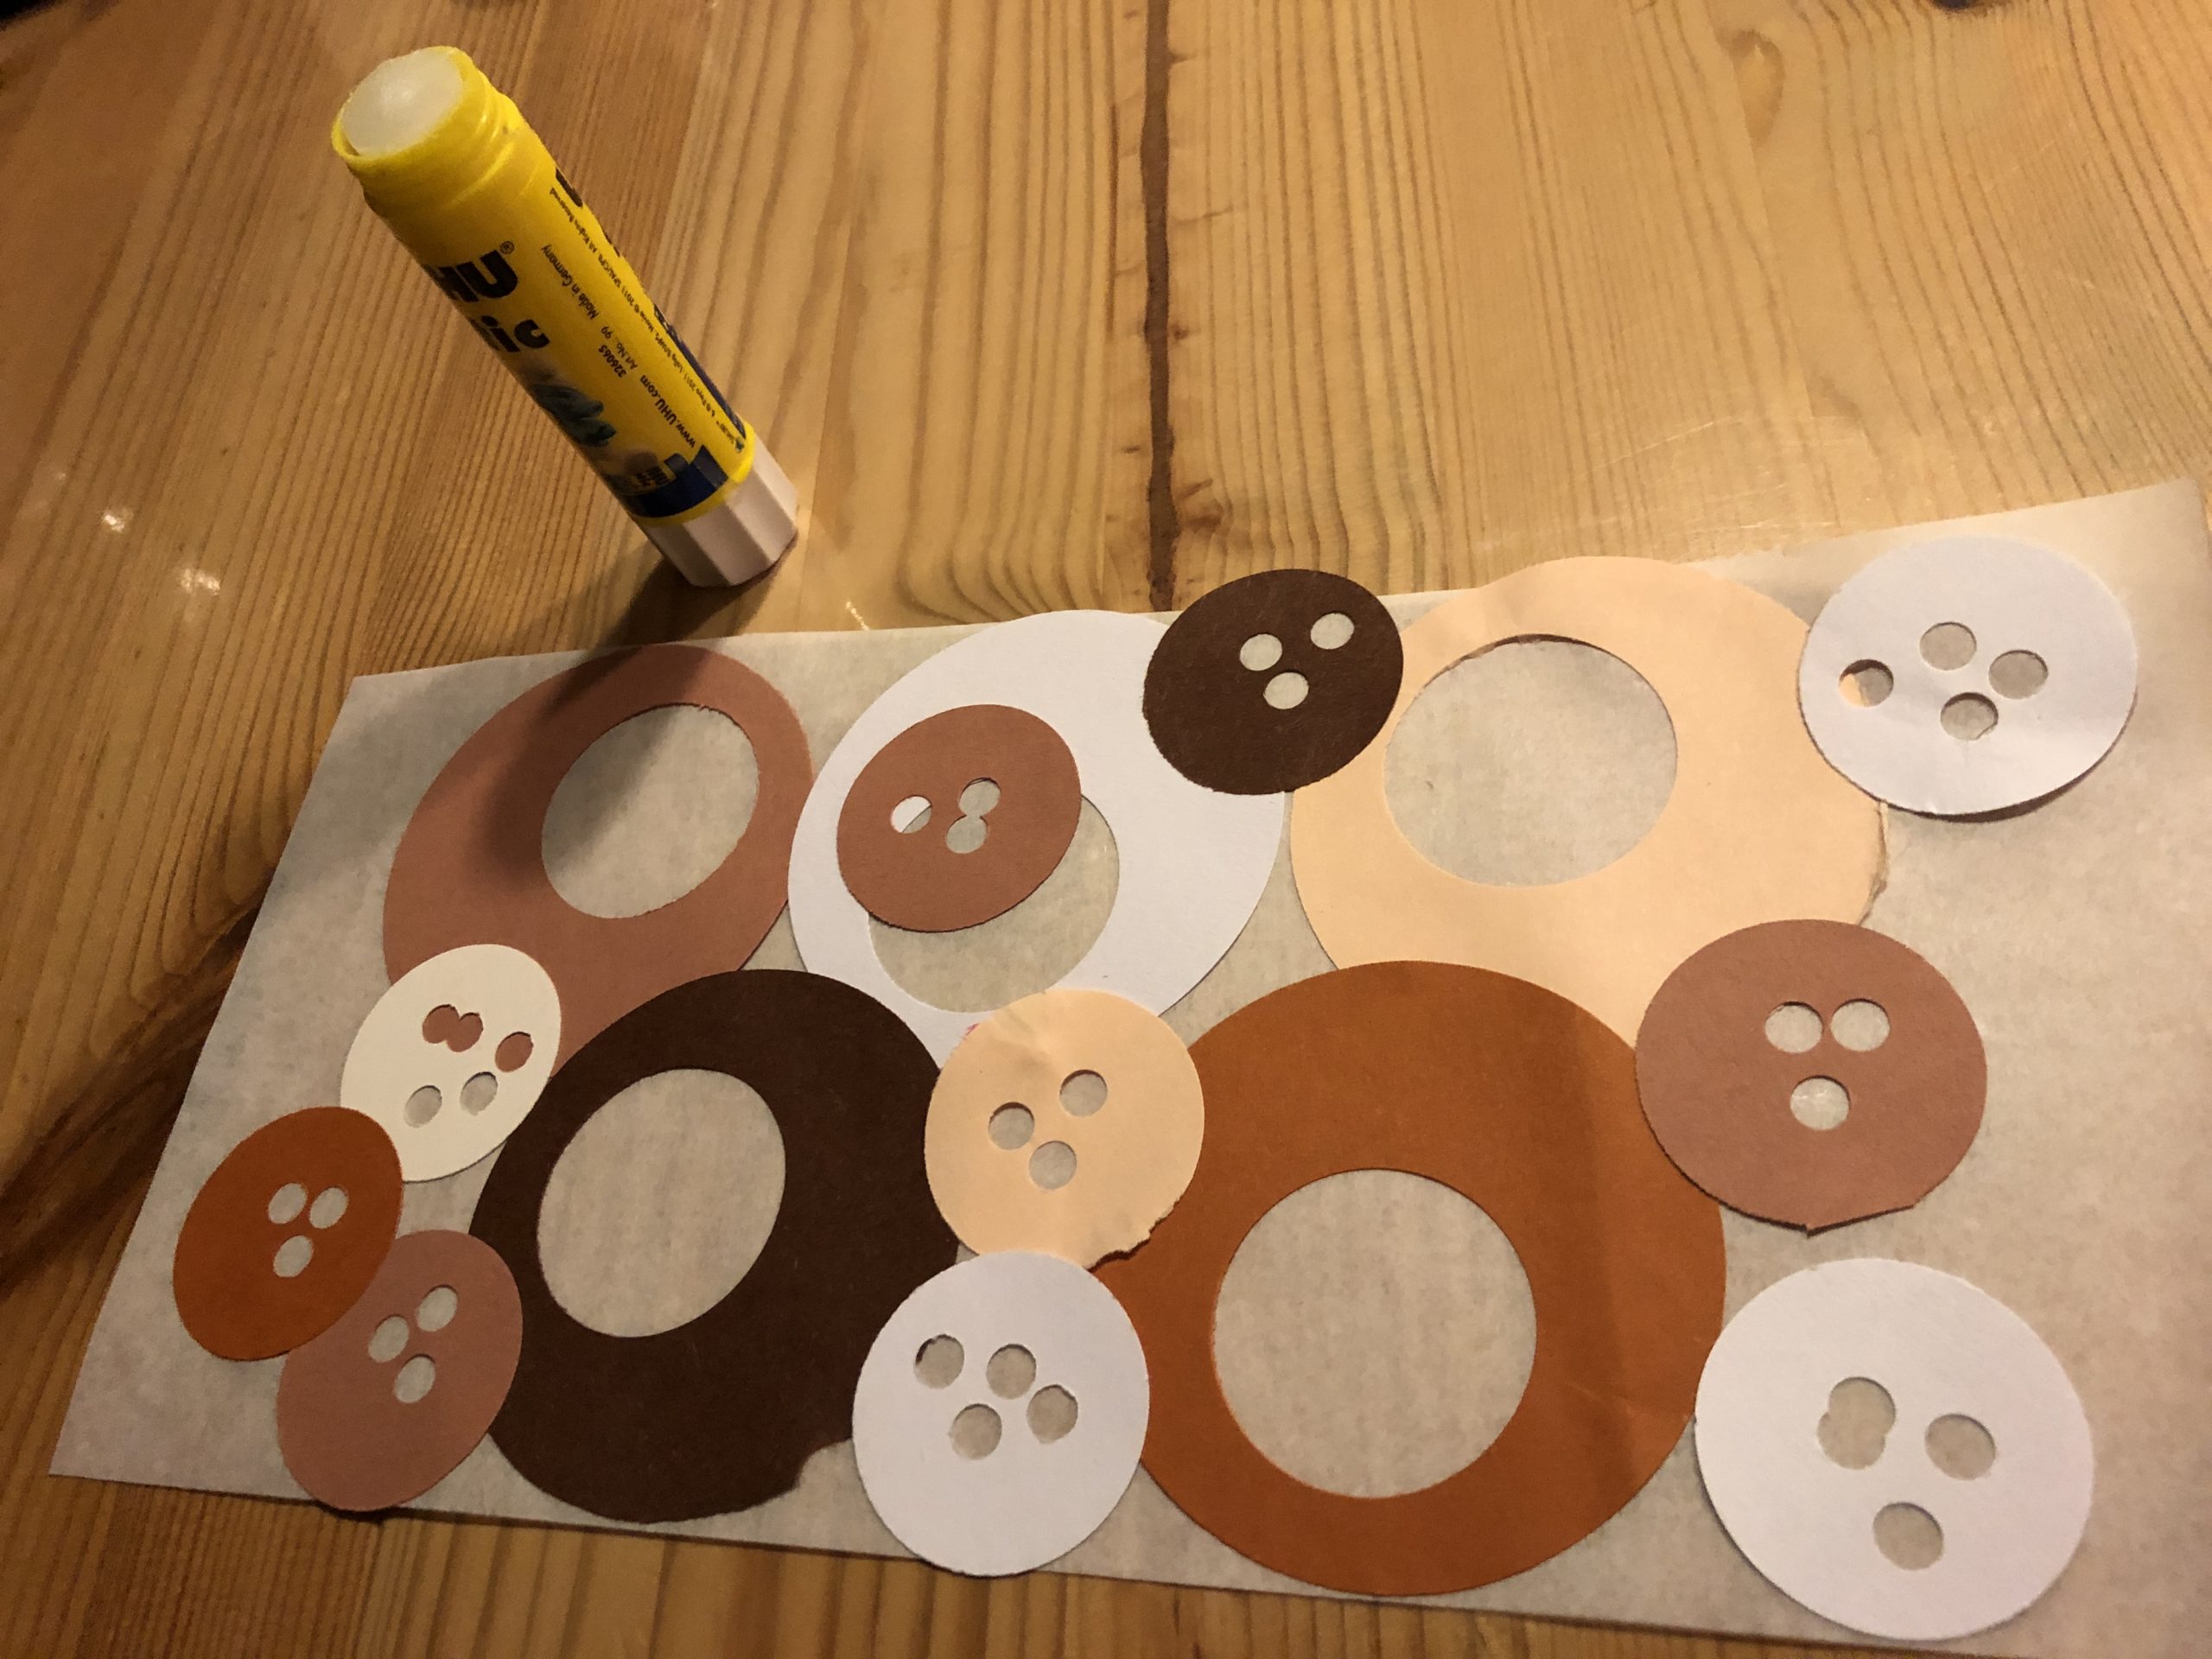 Bild zum Schritt 7 für das Bastel- und DIY-Abenteuer für Kinder: 'Jetzt klebt ihr alle Kreise auf das Butterbrotpapier.'